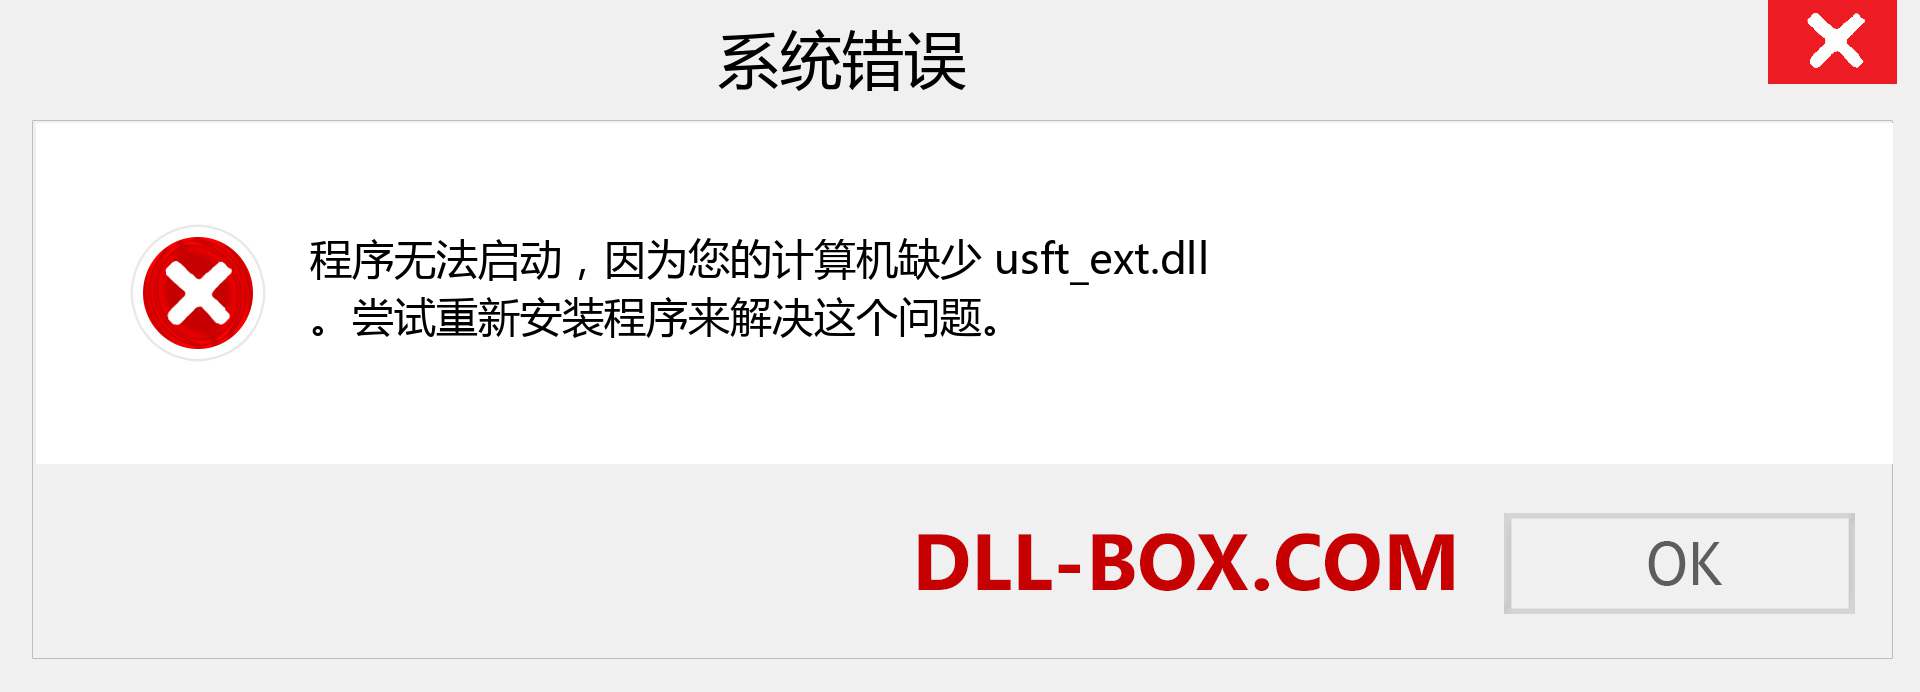 usft_ext.dll 文件丢失？。 适用于 Windows 7、8、10 的下载 - 修复 Windows、照片、图像上的 usft_ext dll 丢失错误